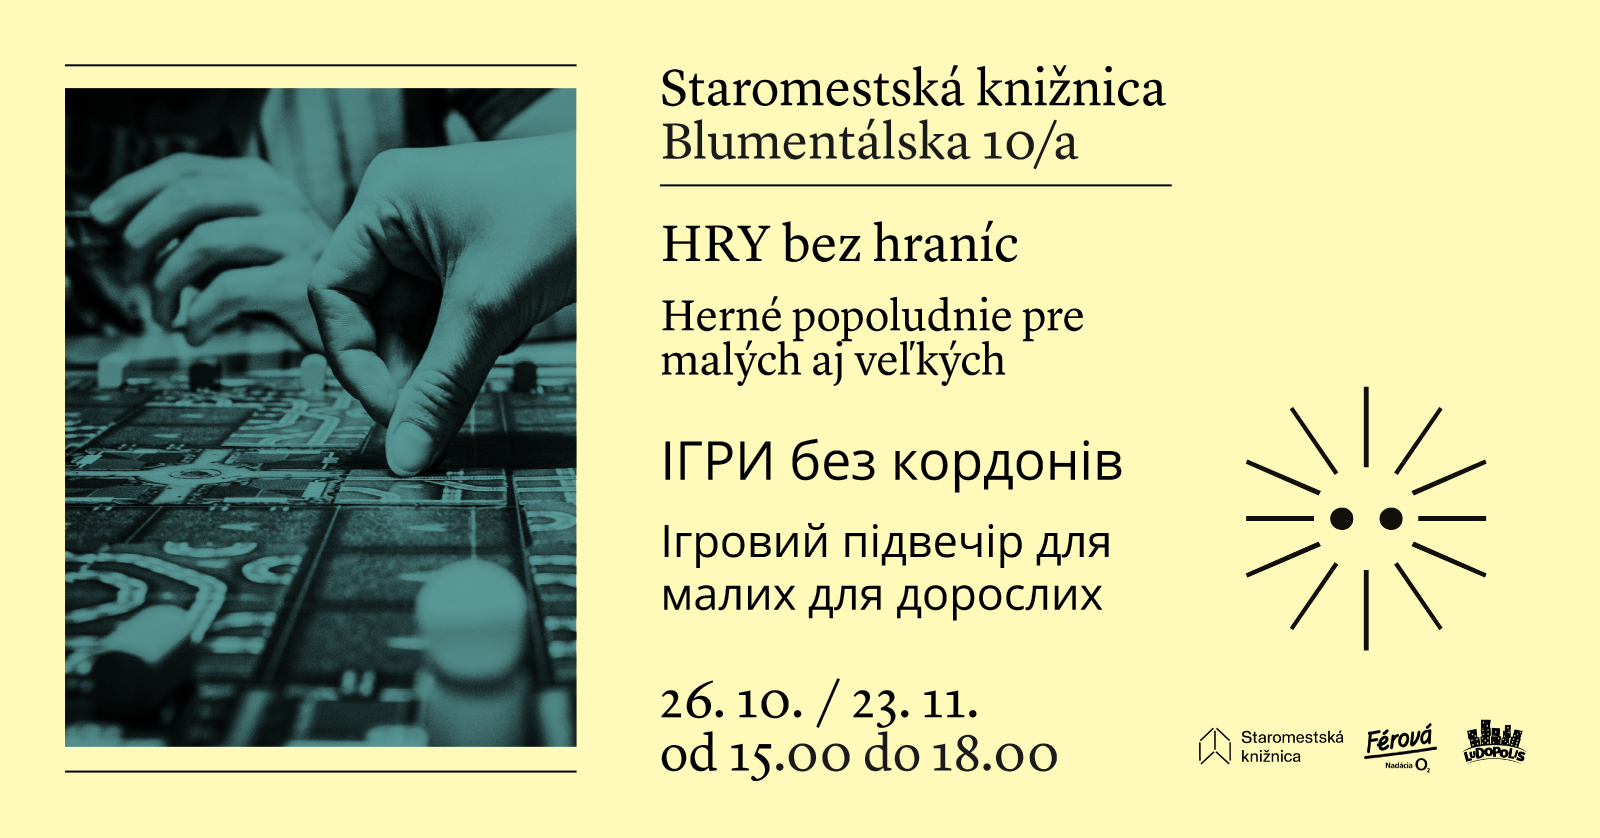 Herné popoludnie pre deti - štvrtok 26. októbra od 15.00 do 18.00 v Staromestskej knižnici na Blumentálskej 10/a